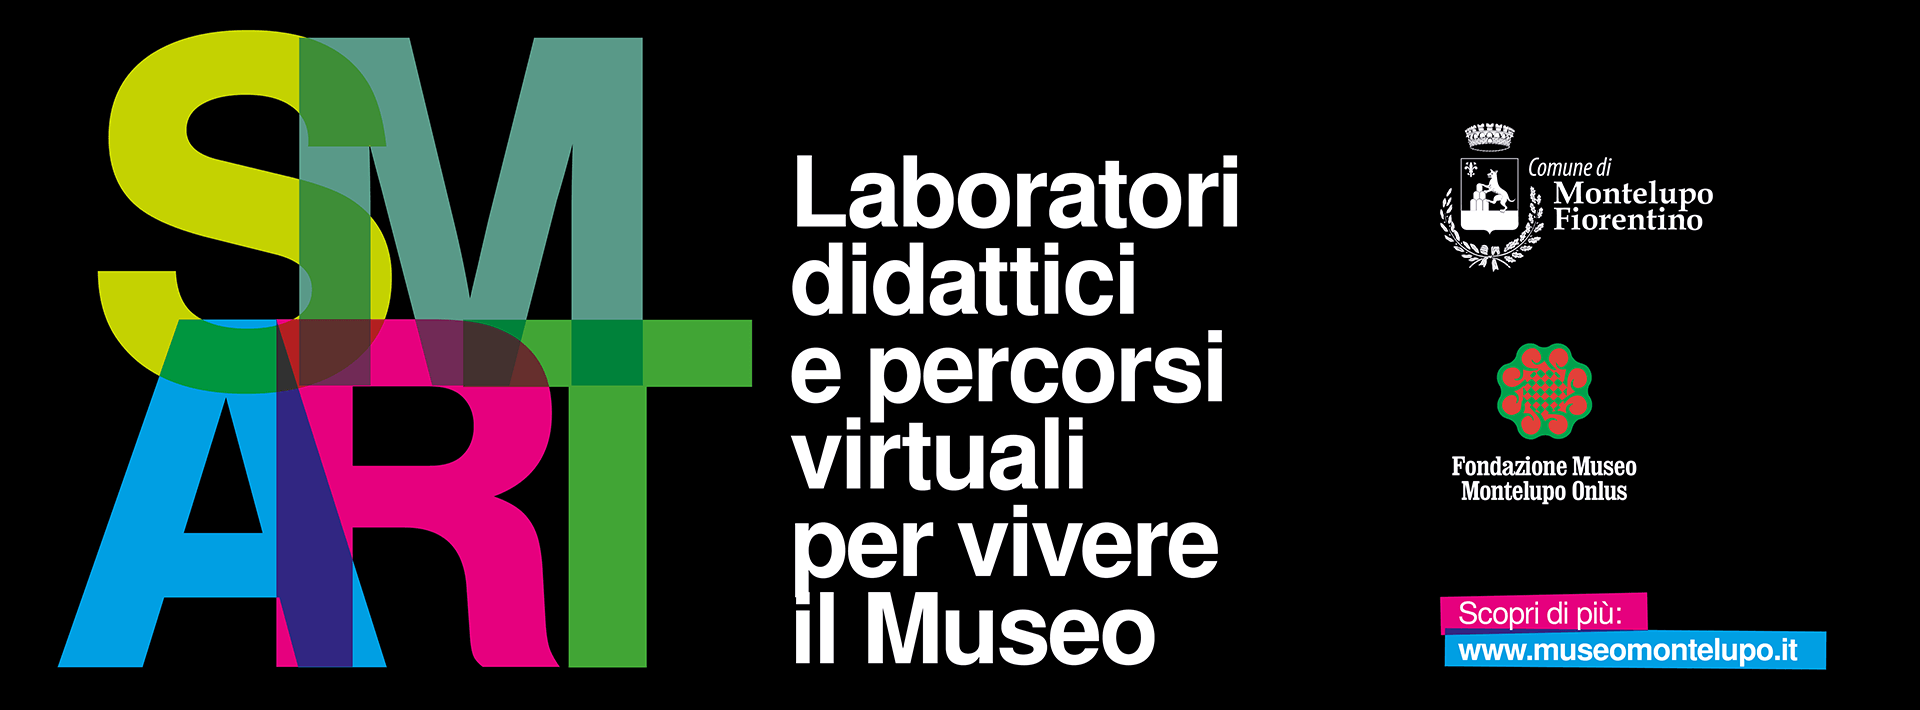 SMART - Laboratori didattici e percorsi virtuali per vivere il Museo